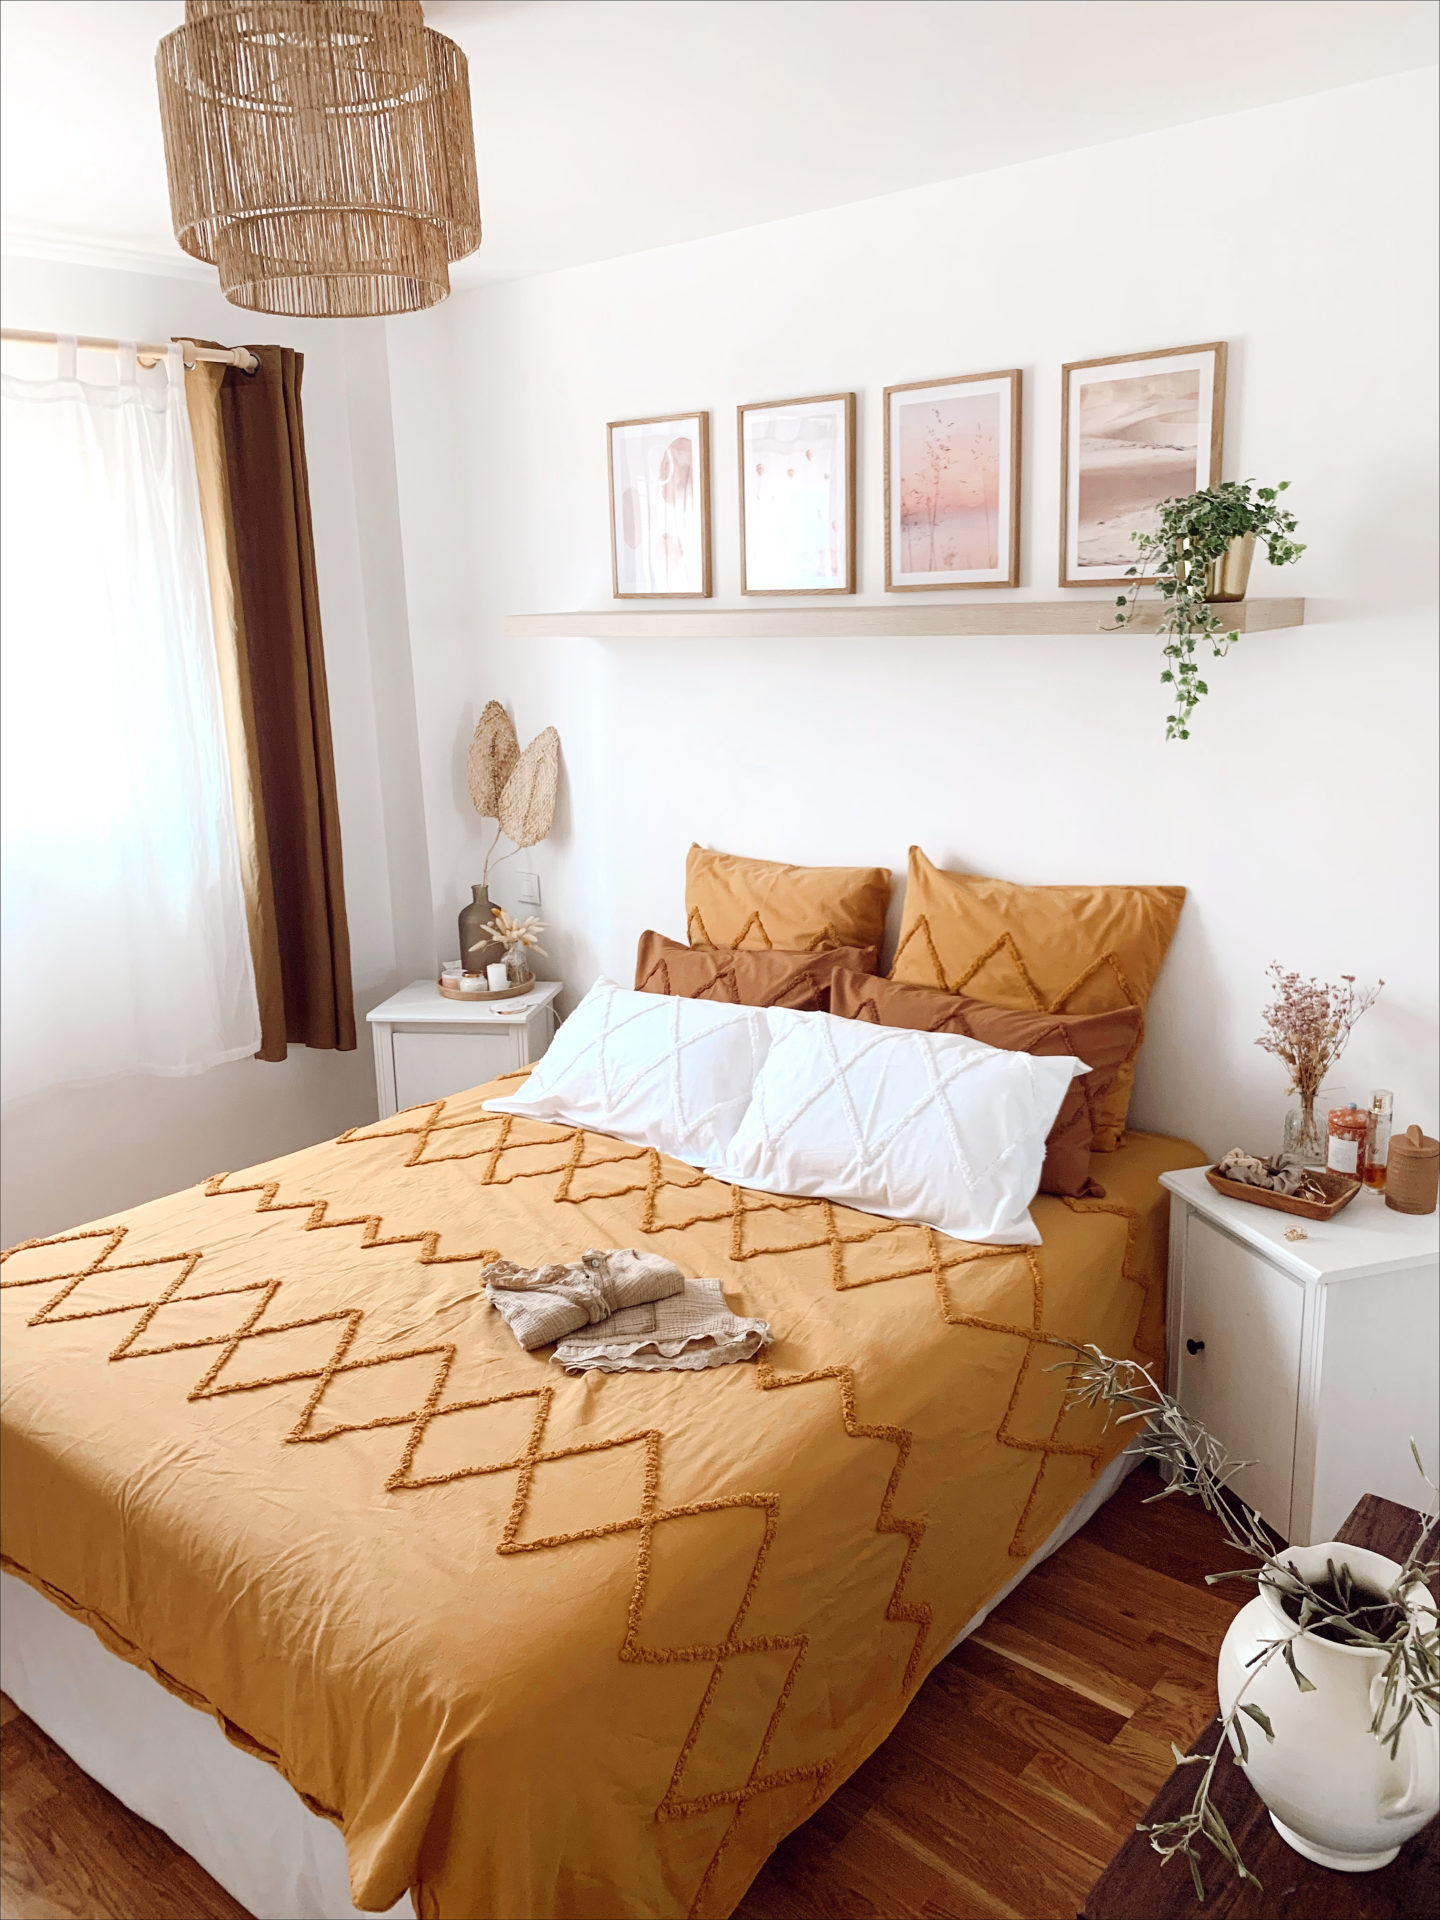 www.chonandchon.com cozy bedroom